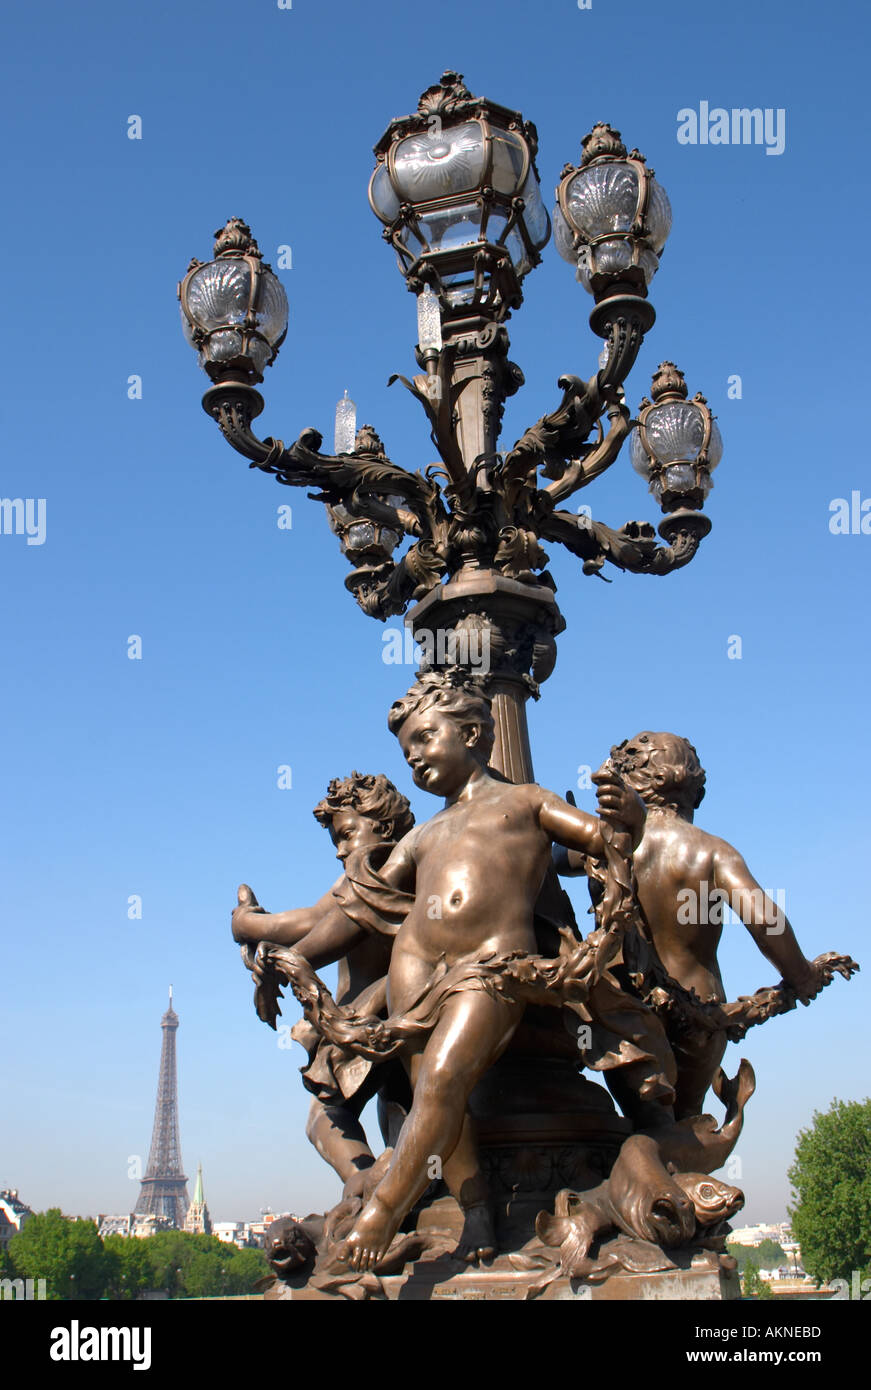 Lampost with " Ronde des Amours" (1899 - Henri Gauquié) sculpture on the Pont Alexandre III Bridge, Paris, France Stock Photo